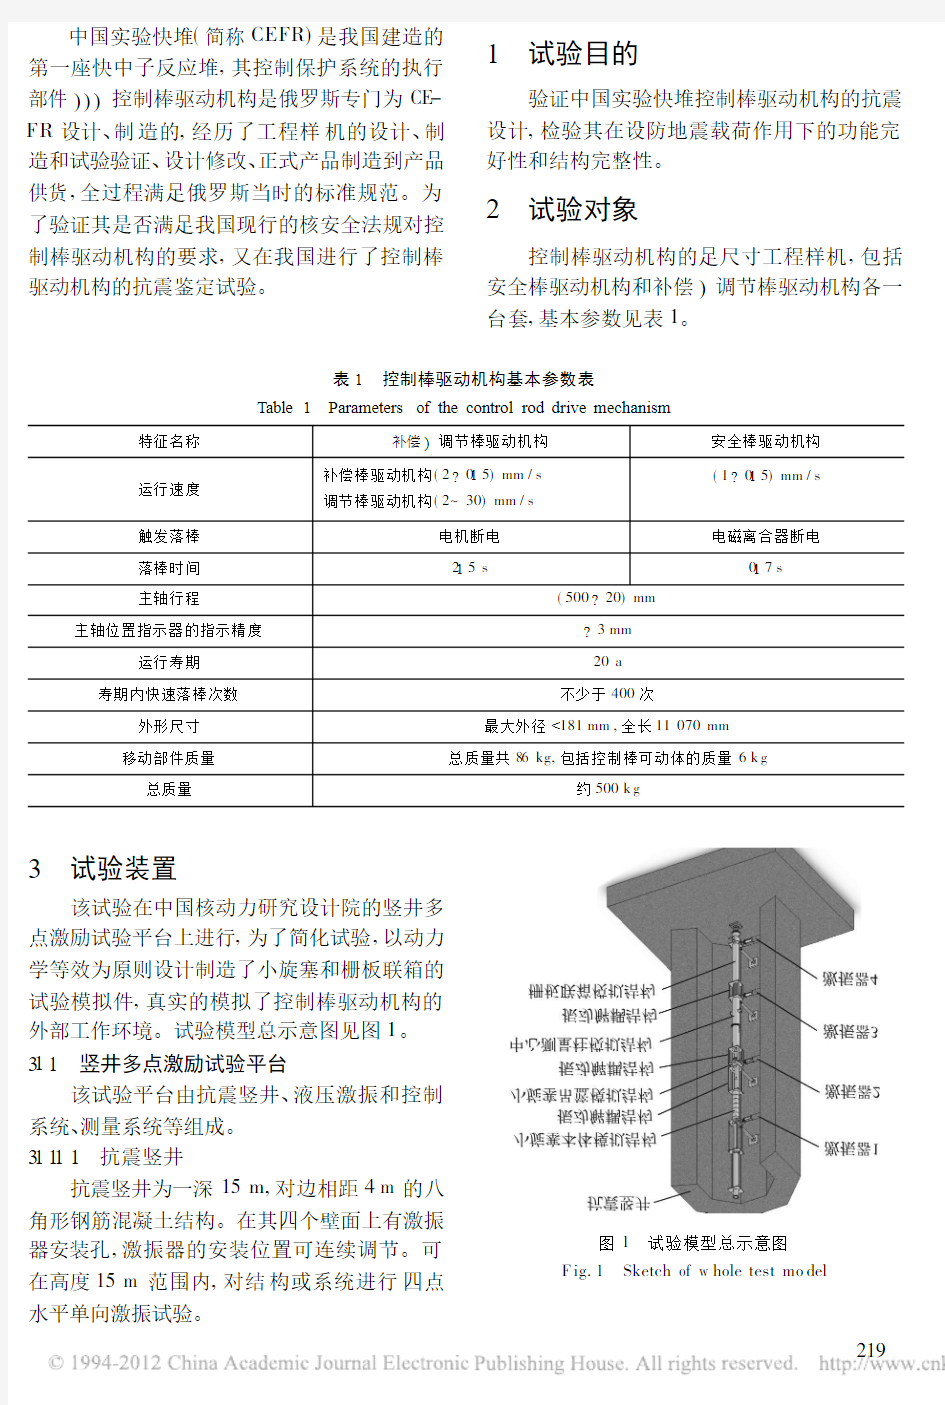 中国实验快堆控制棒驱动机构抗震鉴定试验